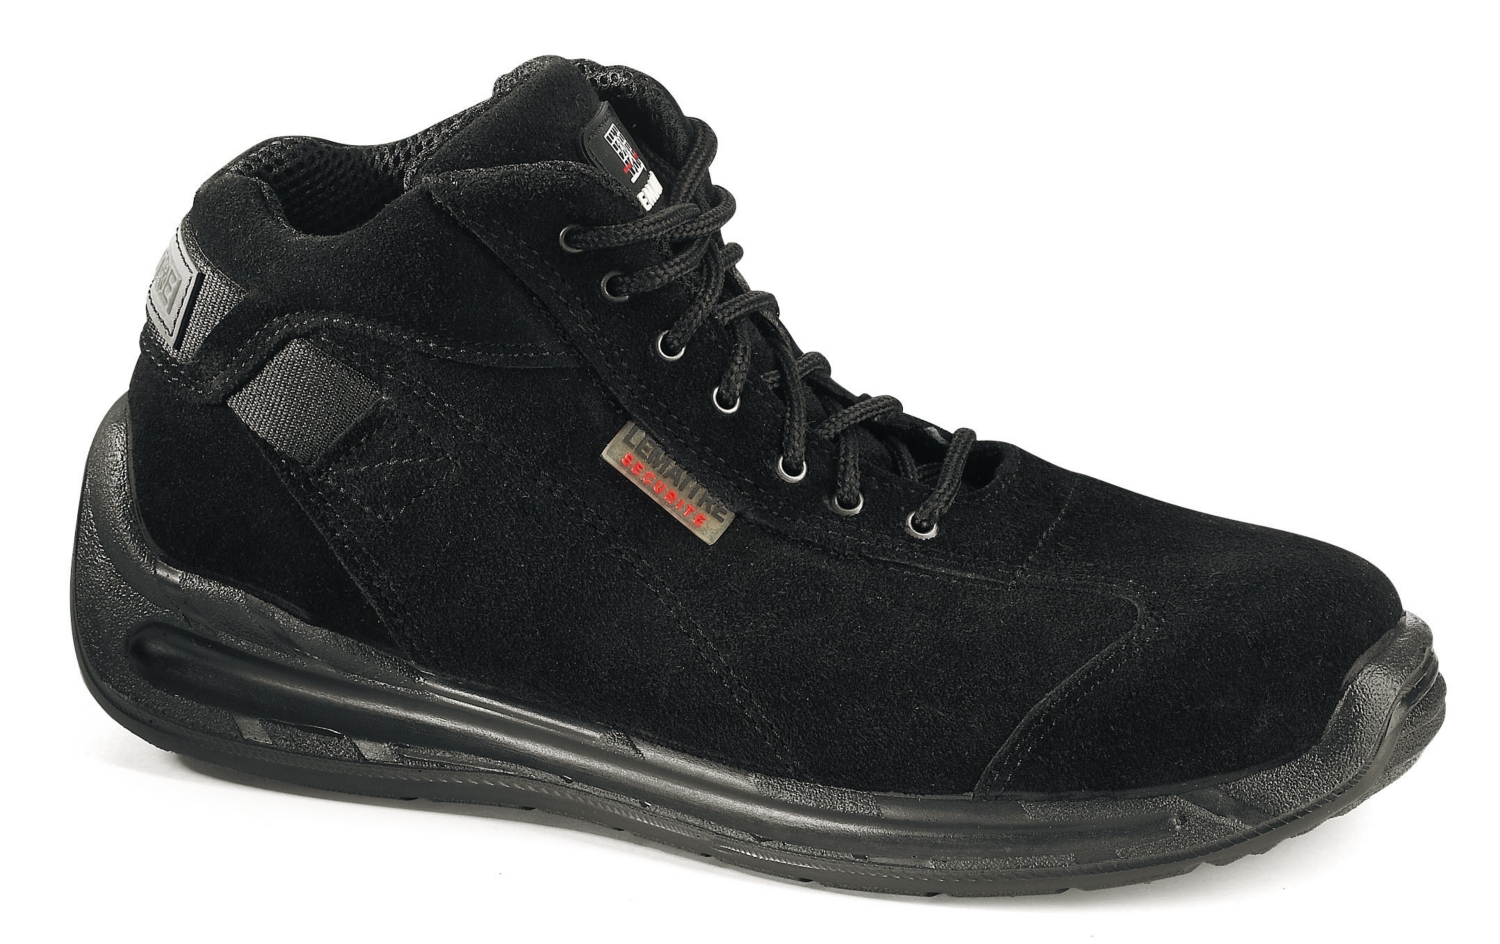  Chaussures de sécurité hautes Blackcobra S3 